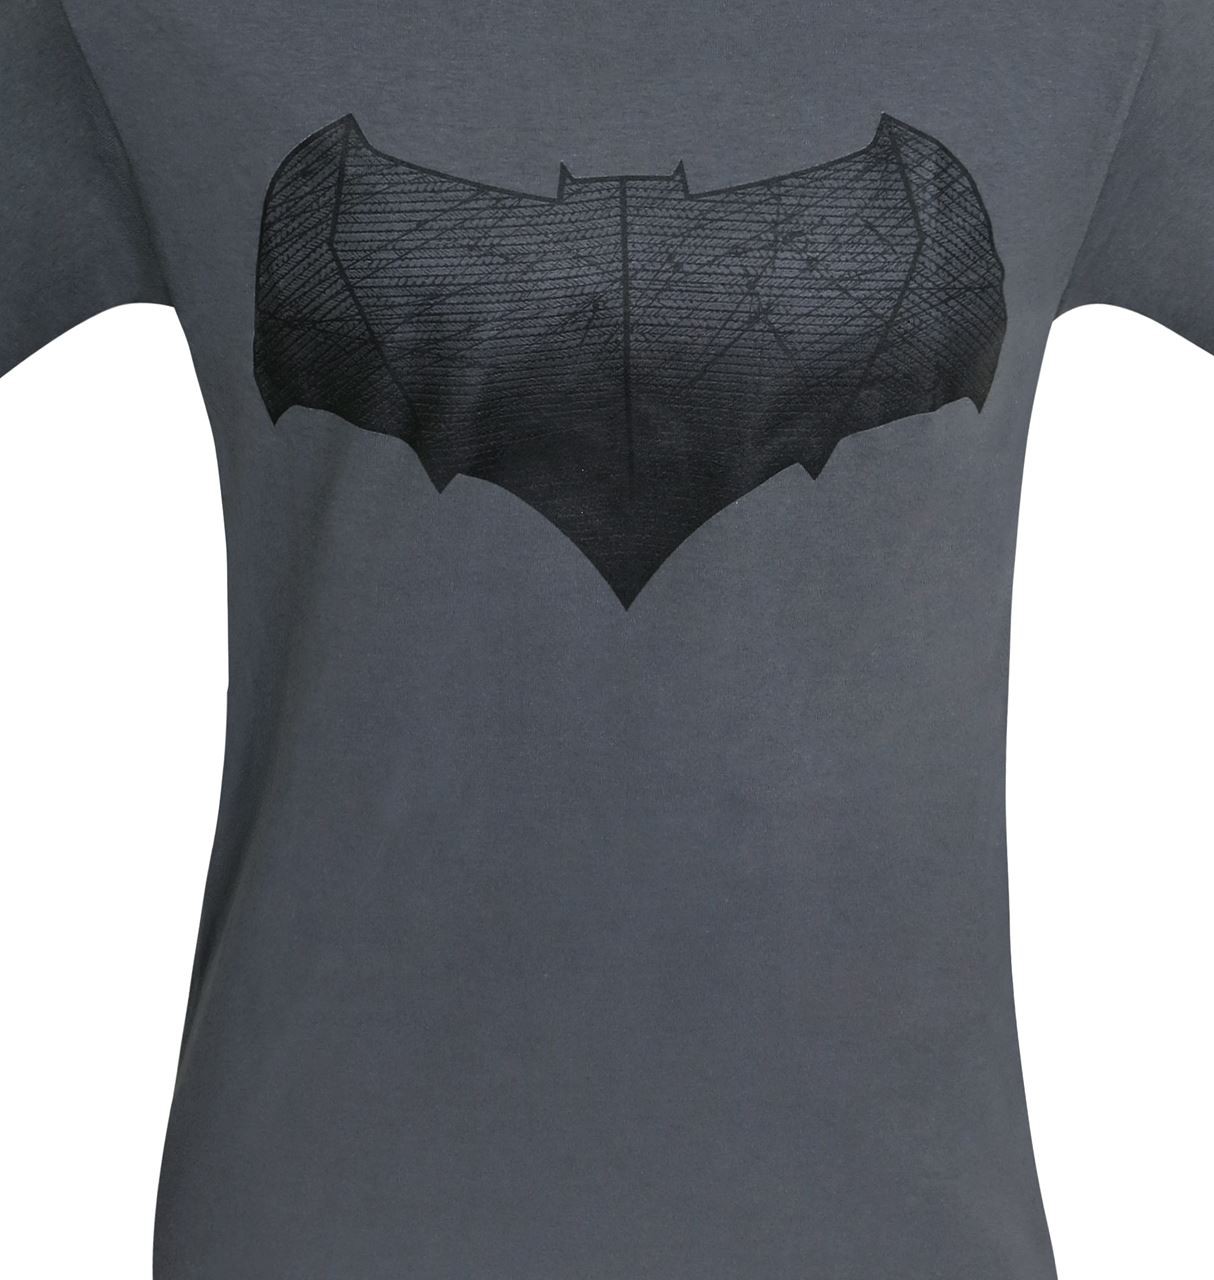 Batman Vs Superman Bat Symbol T-Shirt